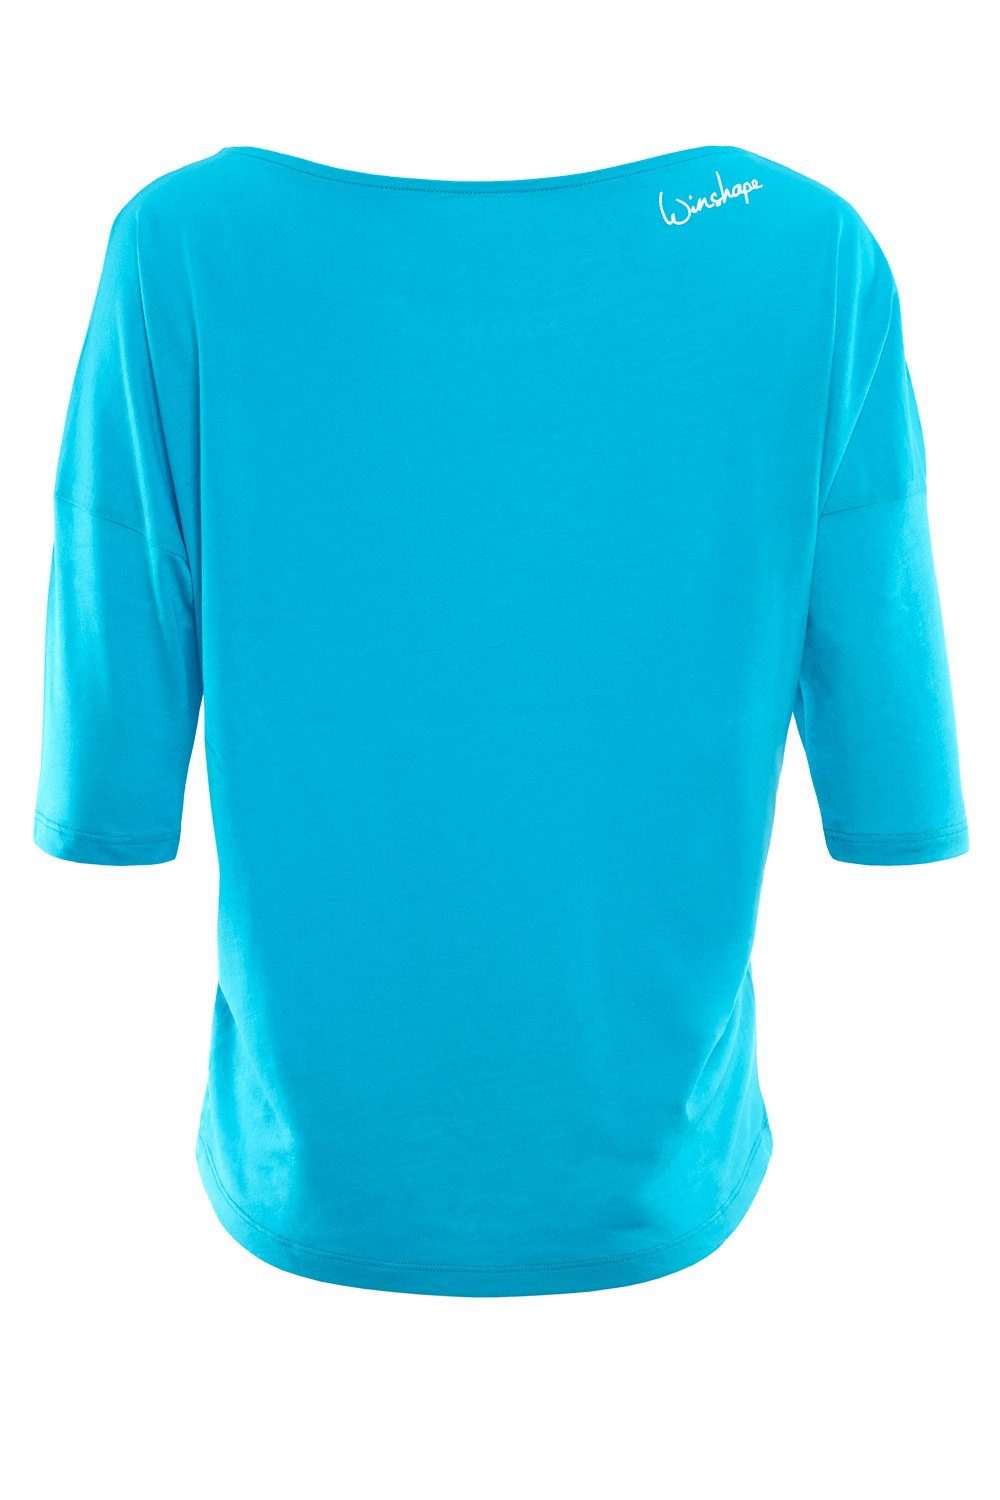 Winshape 3/4-Arm-Shirt ultra - MCS001 blue weiß leicht sky glitzer mit weißem Glitzer-Aufdruck